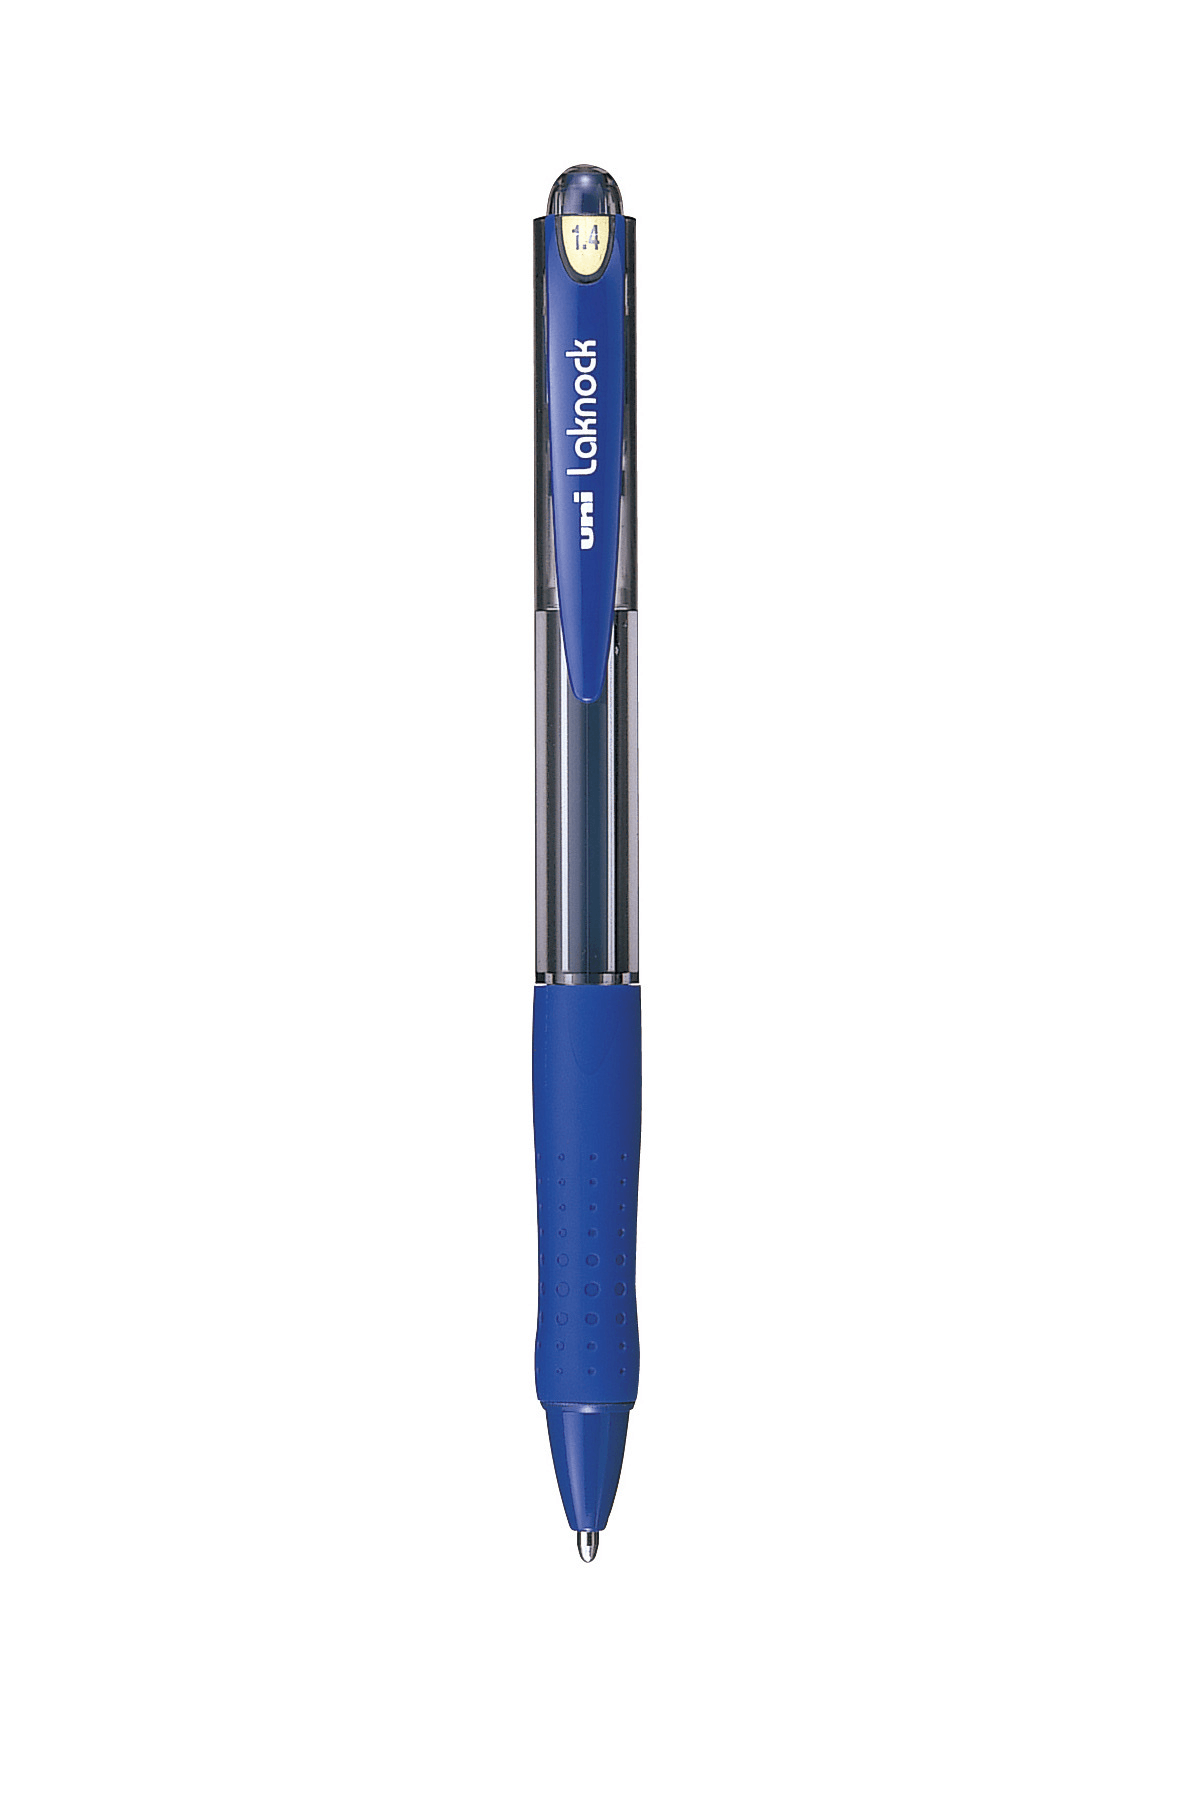 ปากกาลูกลื่นแบบกด uni Laknock SN-100 สีน้ำเงิน 1.4 มม.